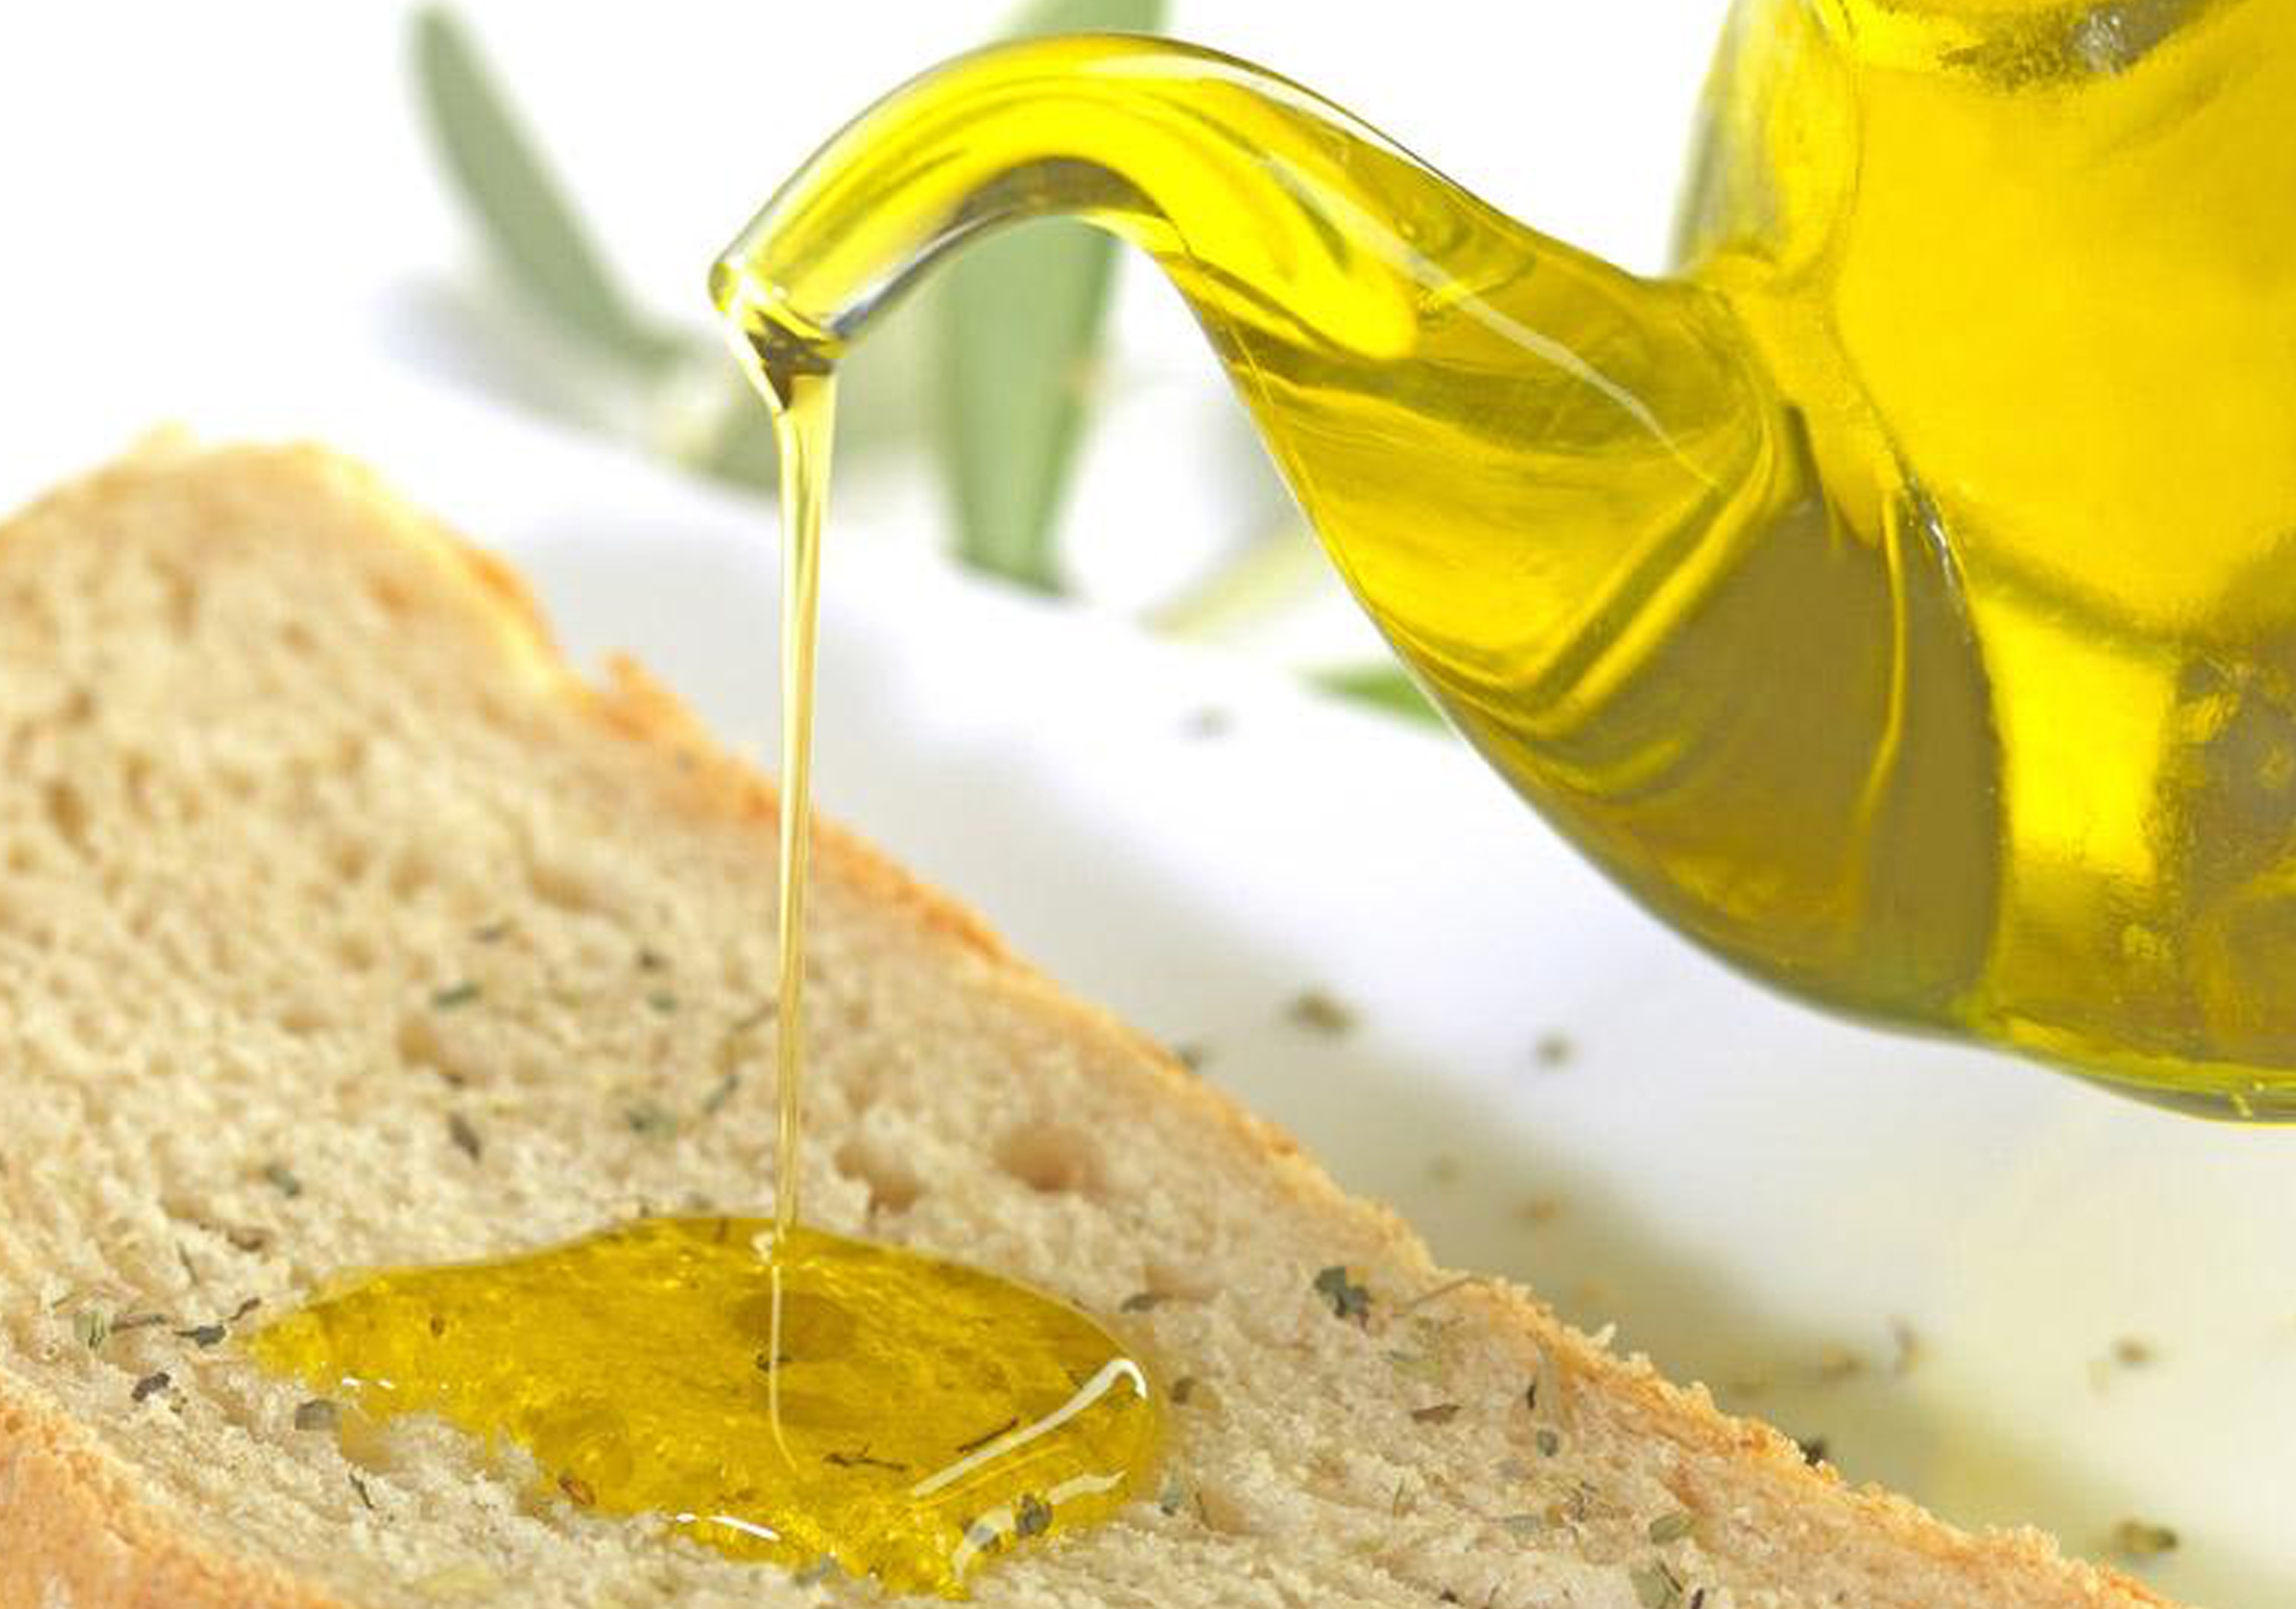 Un cucchiaio di olio di oliva la mattina: i benefici